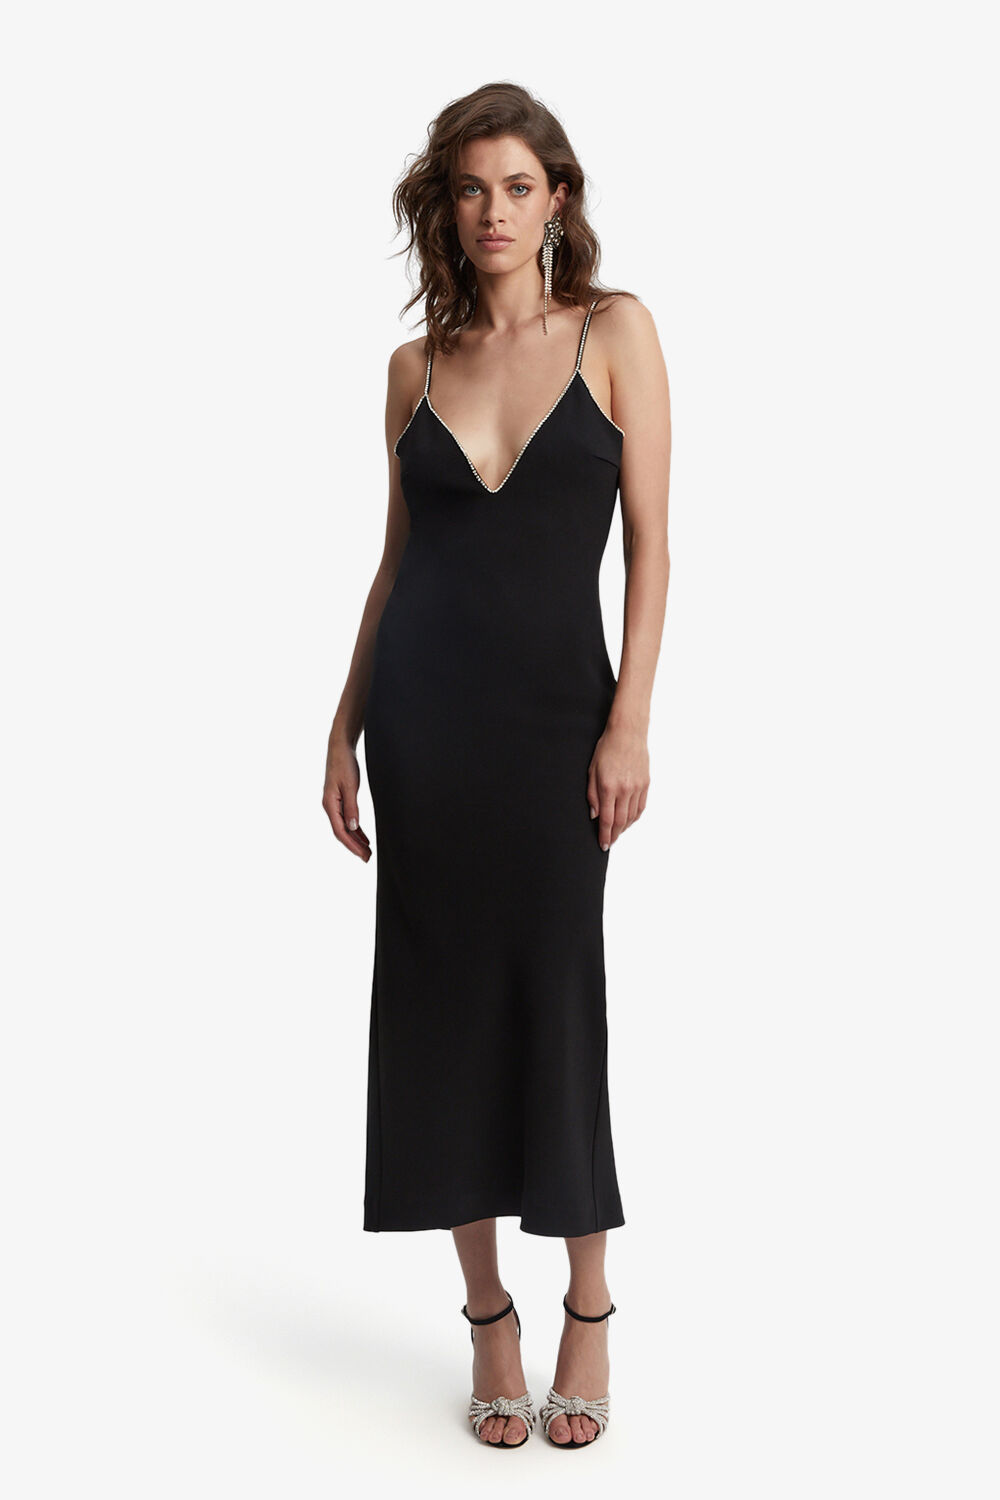 Vira Diamonte Dress in Black | Bardot